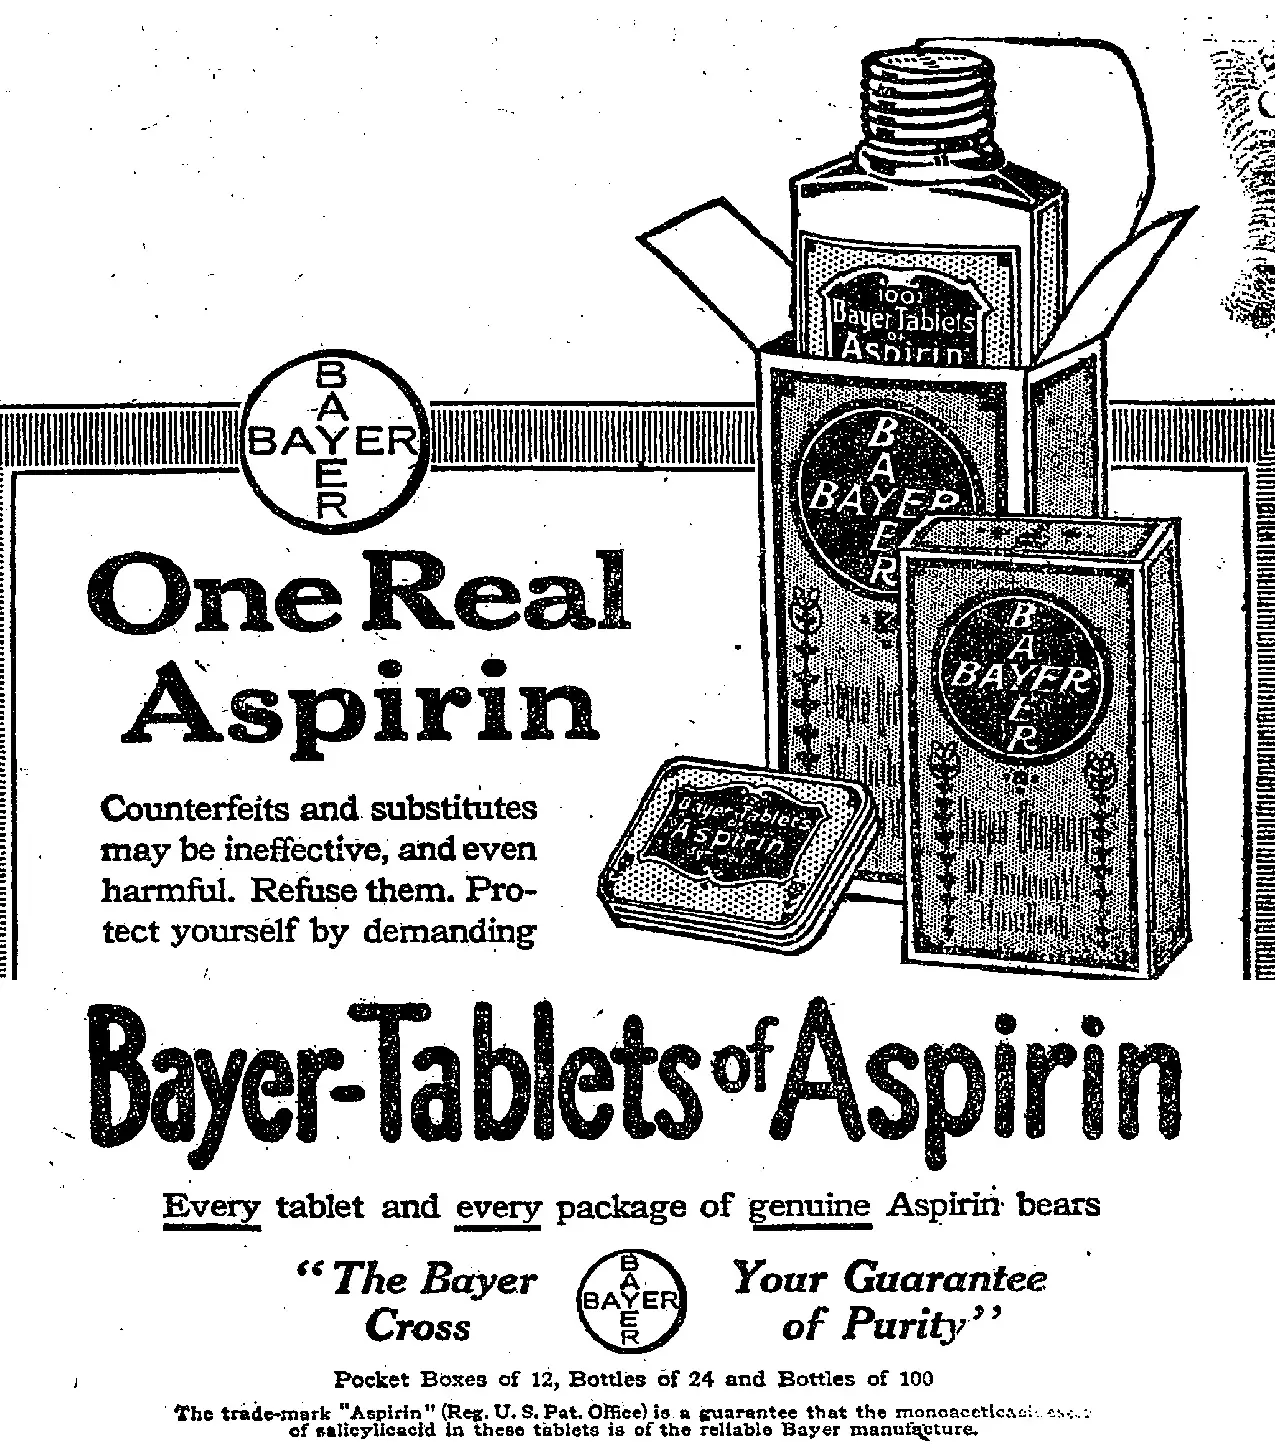 Felix Hoffmann y la historia de la aspirina, la droga maravillosa que nació del deseo de un hijo de ayudar a su padre enfermo